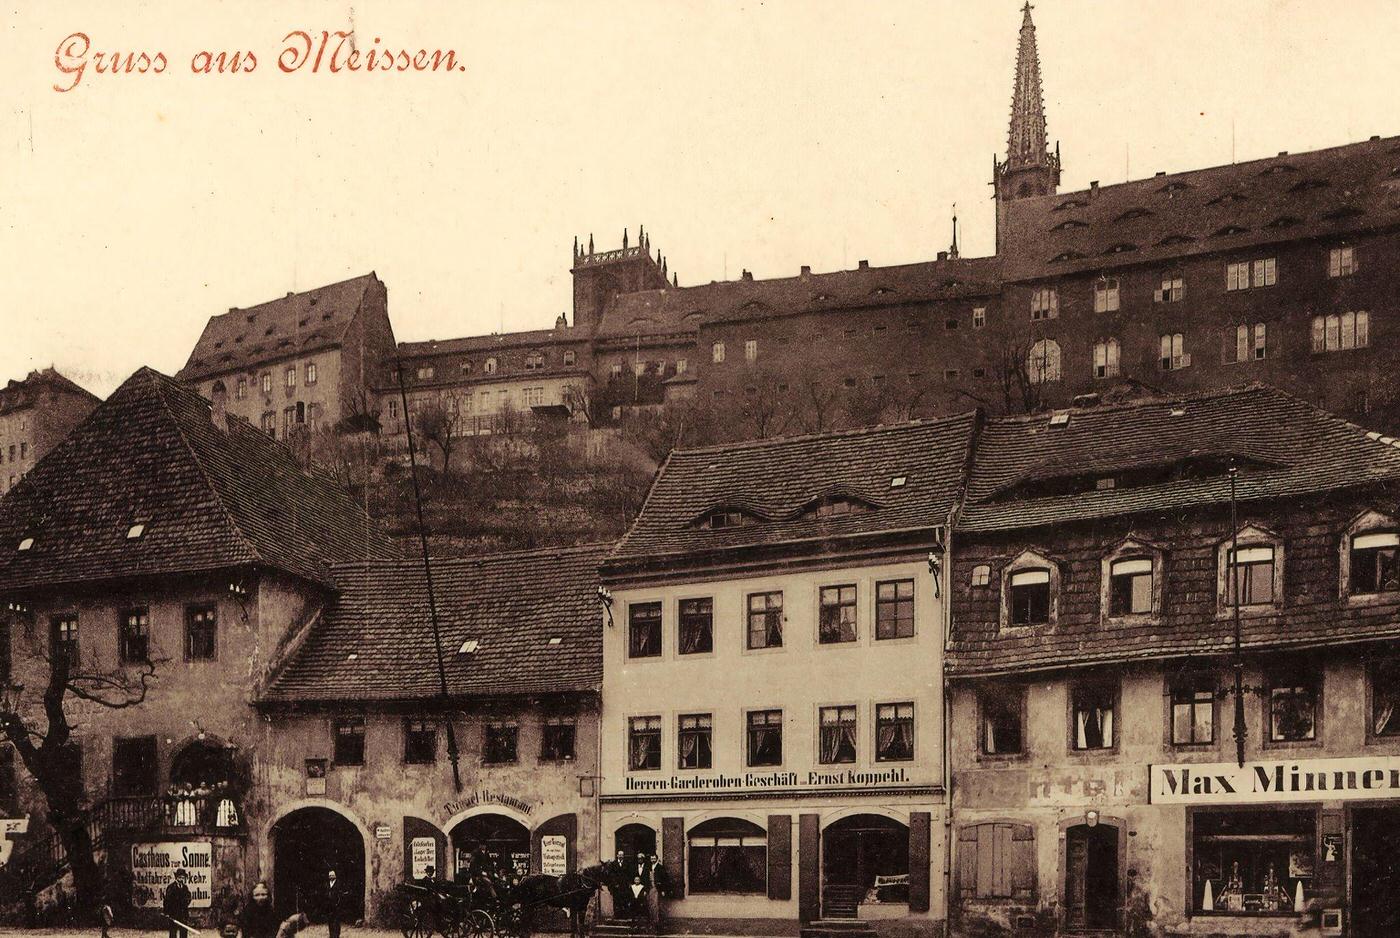 Albrechtsburg, Horse-drawn carriages, Restaurants in Meissen, 1898.